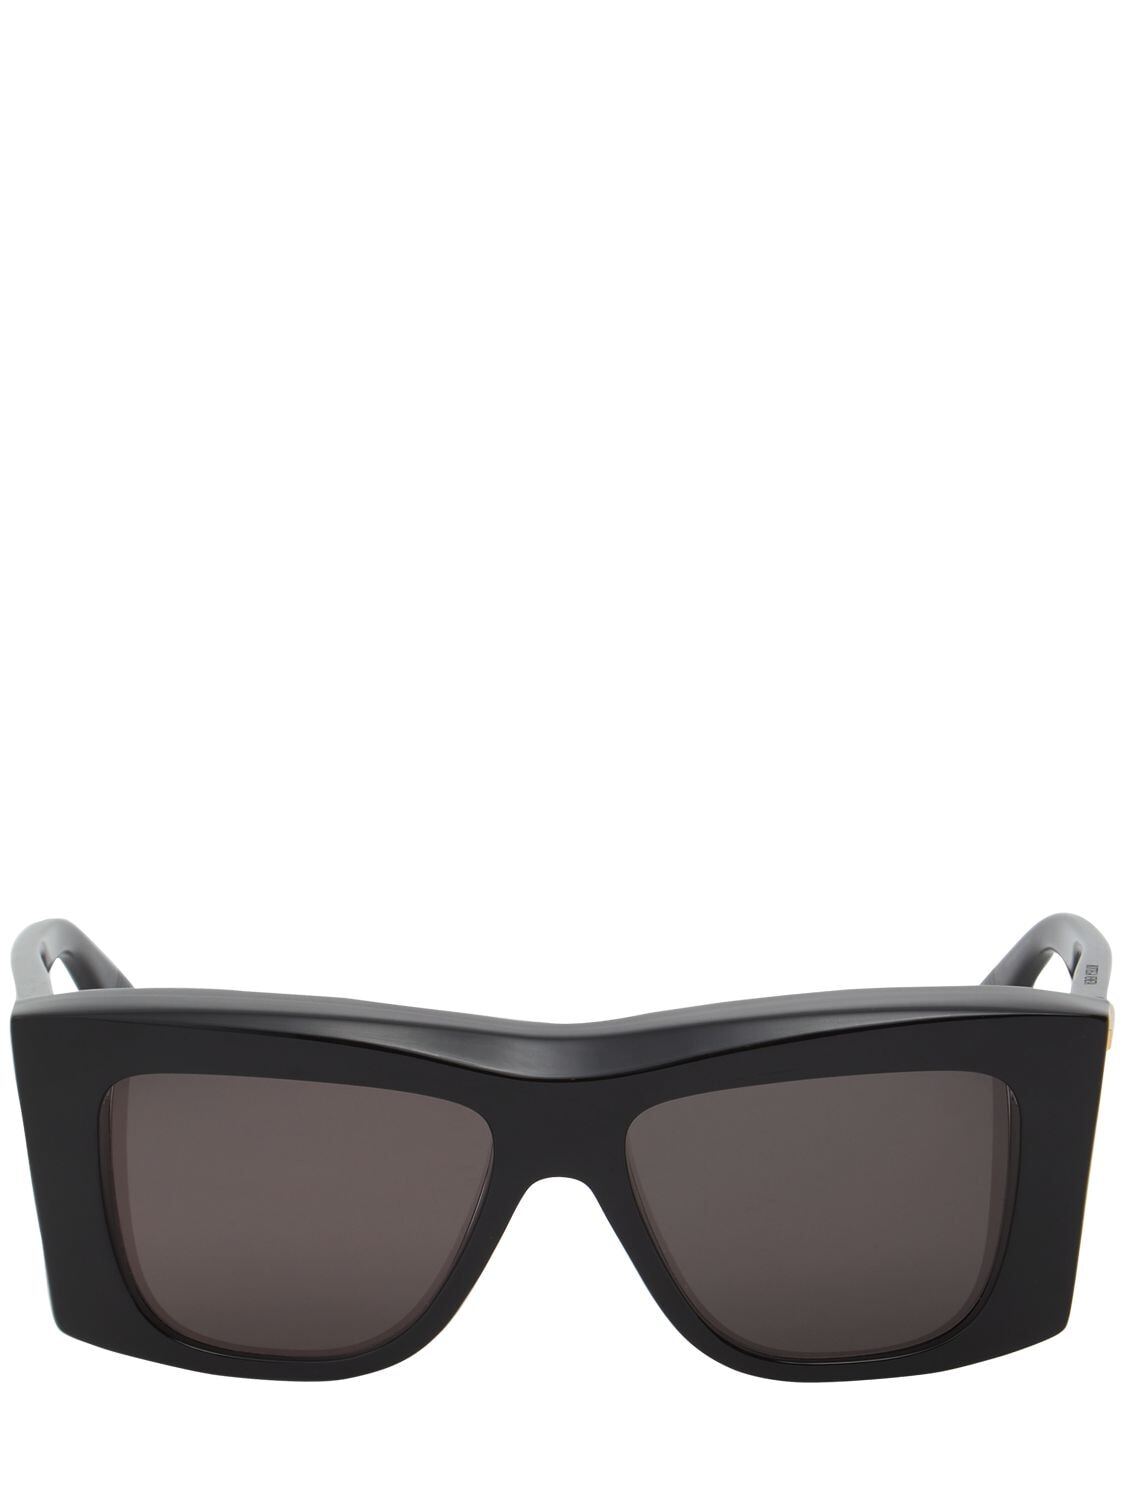 BOTTEGA VENETA Bv1270s Acetate Sunglasses in black / grey